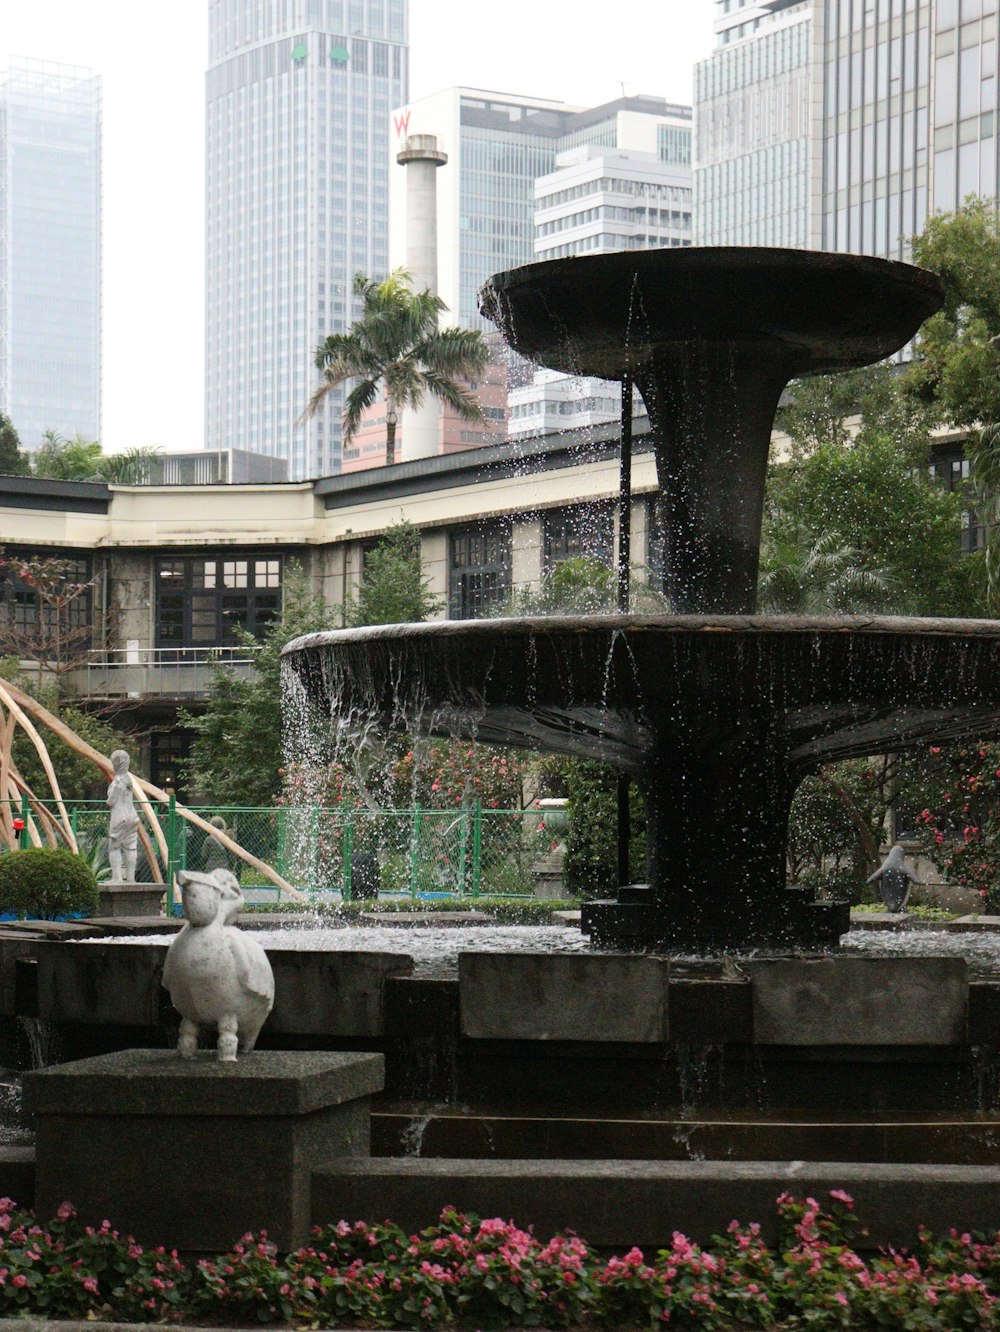 Una fuente en un parque de la ciudad con gente caminando alrededor